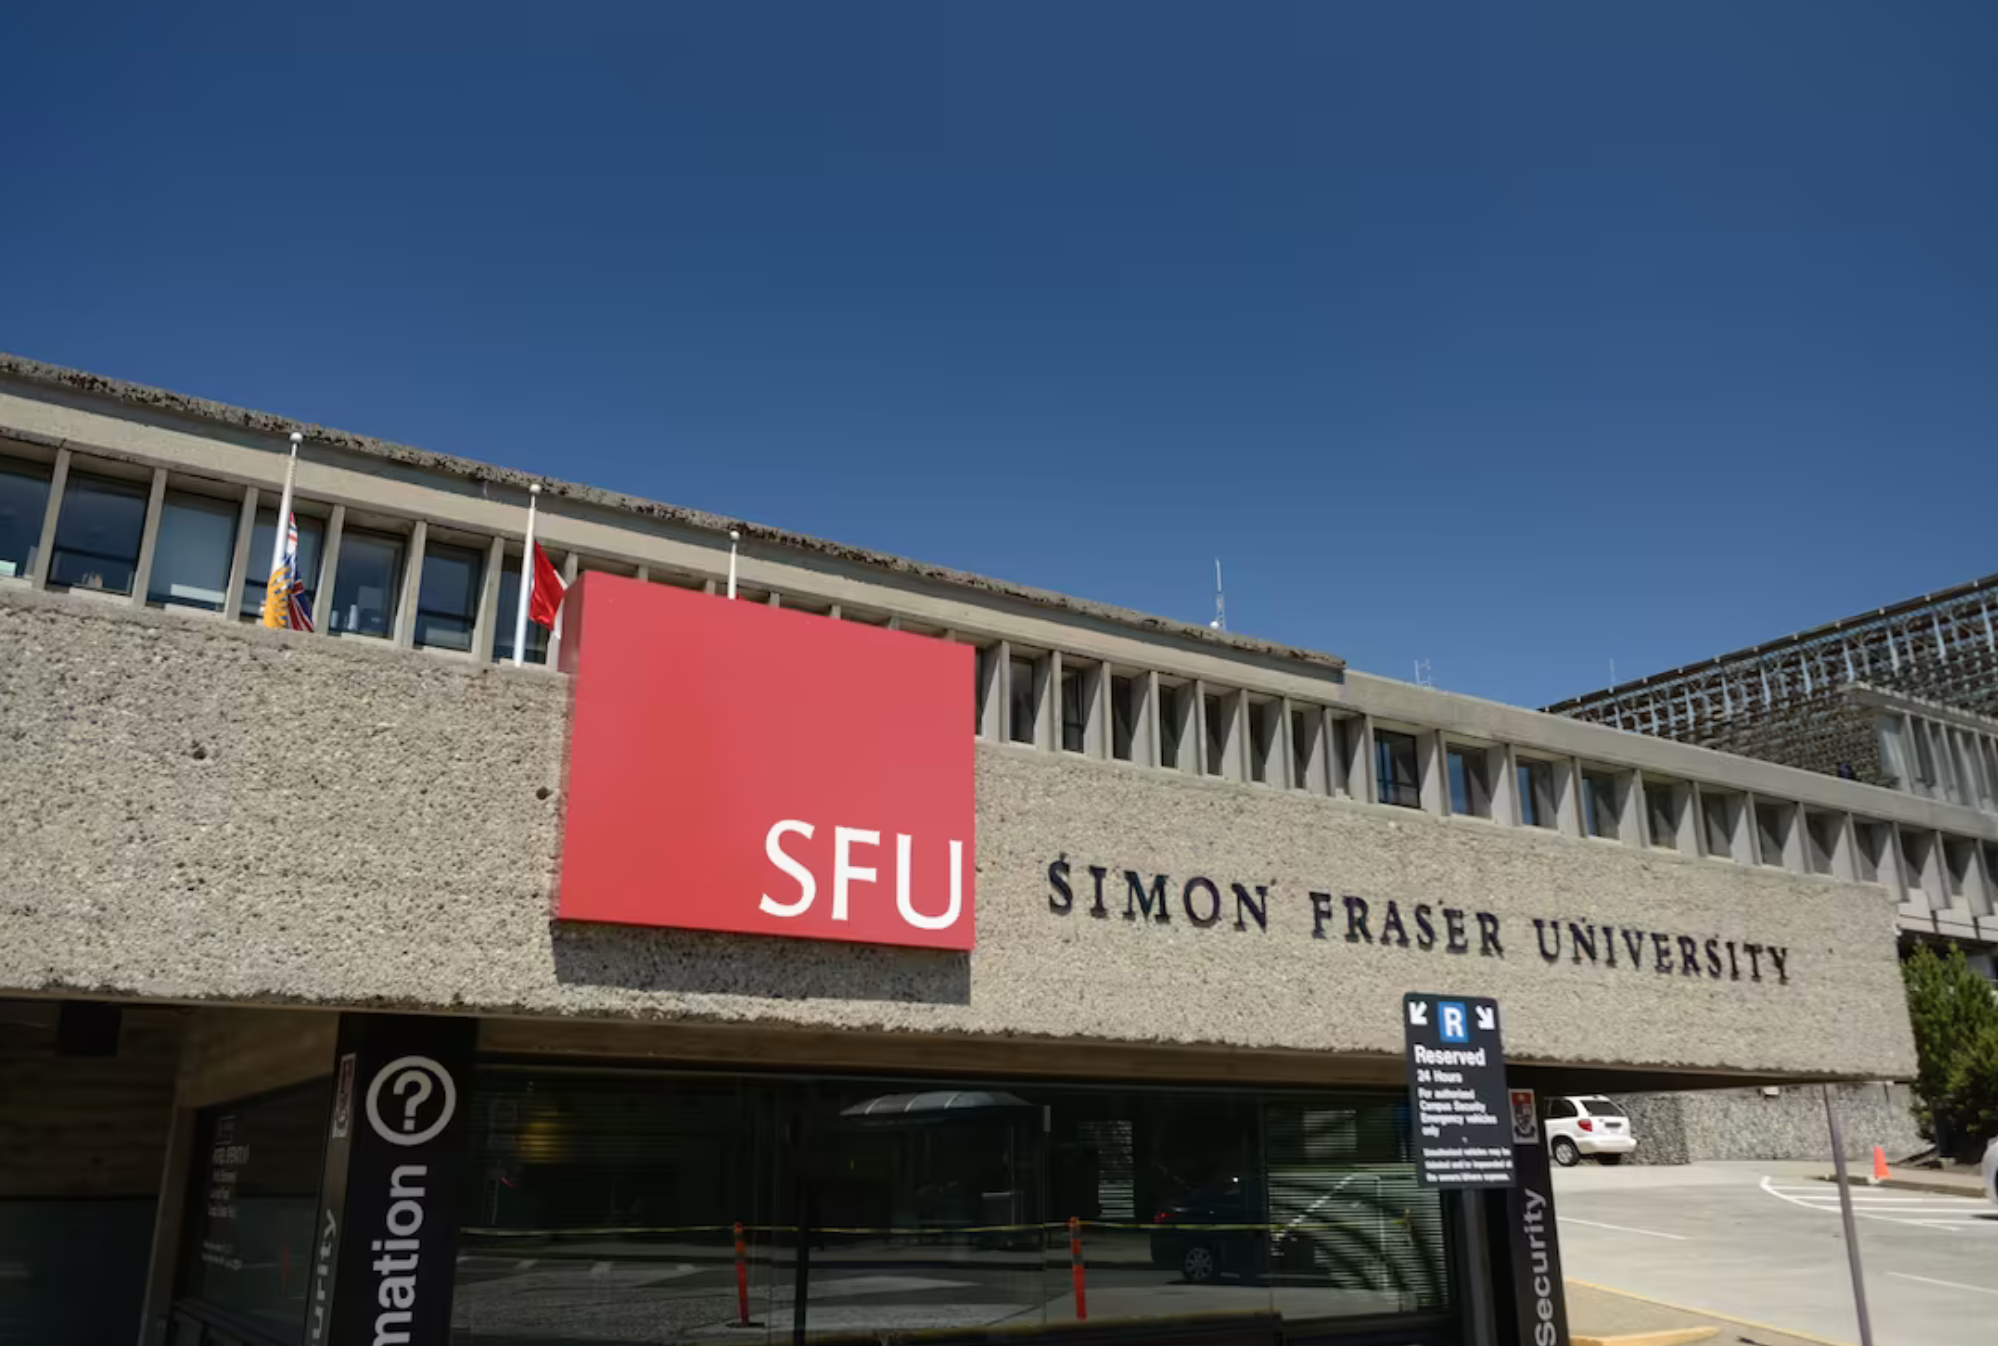 Featured image for “SFU Lifelink v. Simon Fraser University”